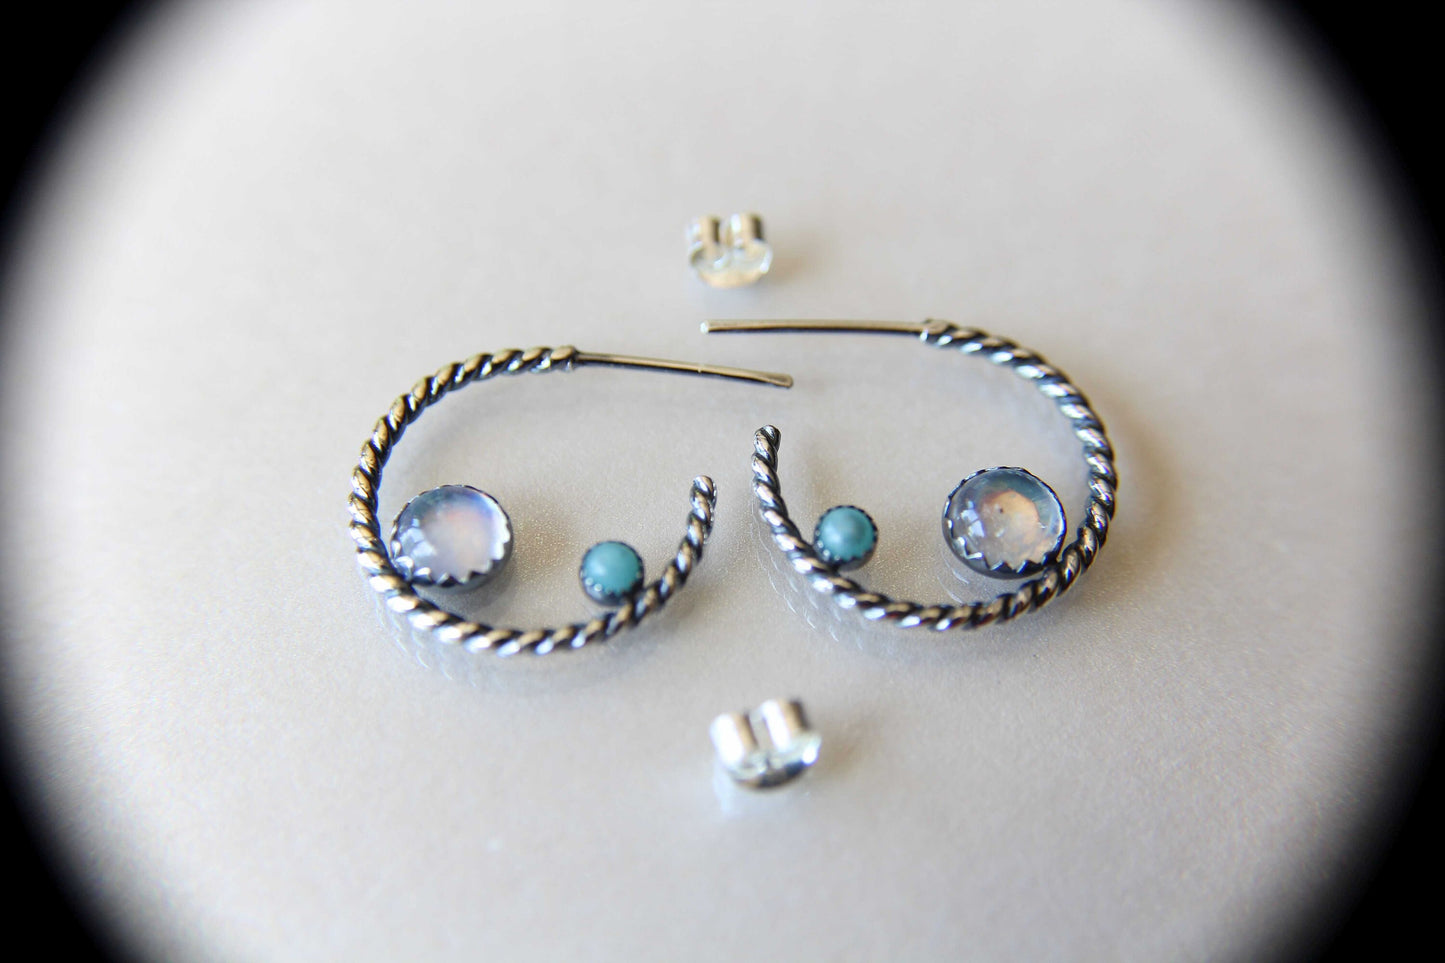 Rainbow Moonstone Earrings, Stud Earrings, Amazonite Earrings, Boho Earrings, Gemstone Earrings, 5mm Moonstone Earrings, Rope Hoop Earrings